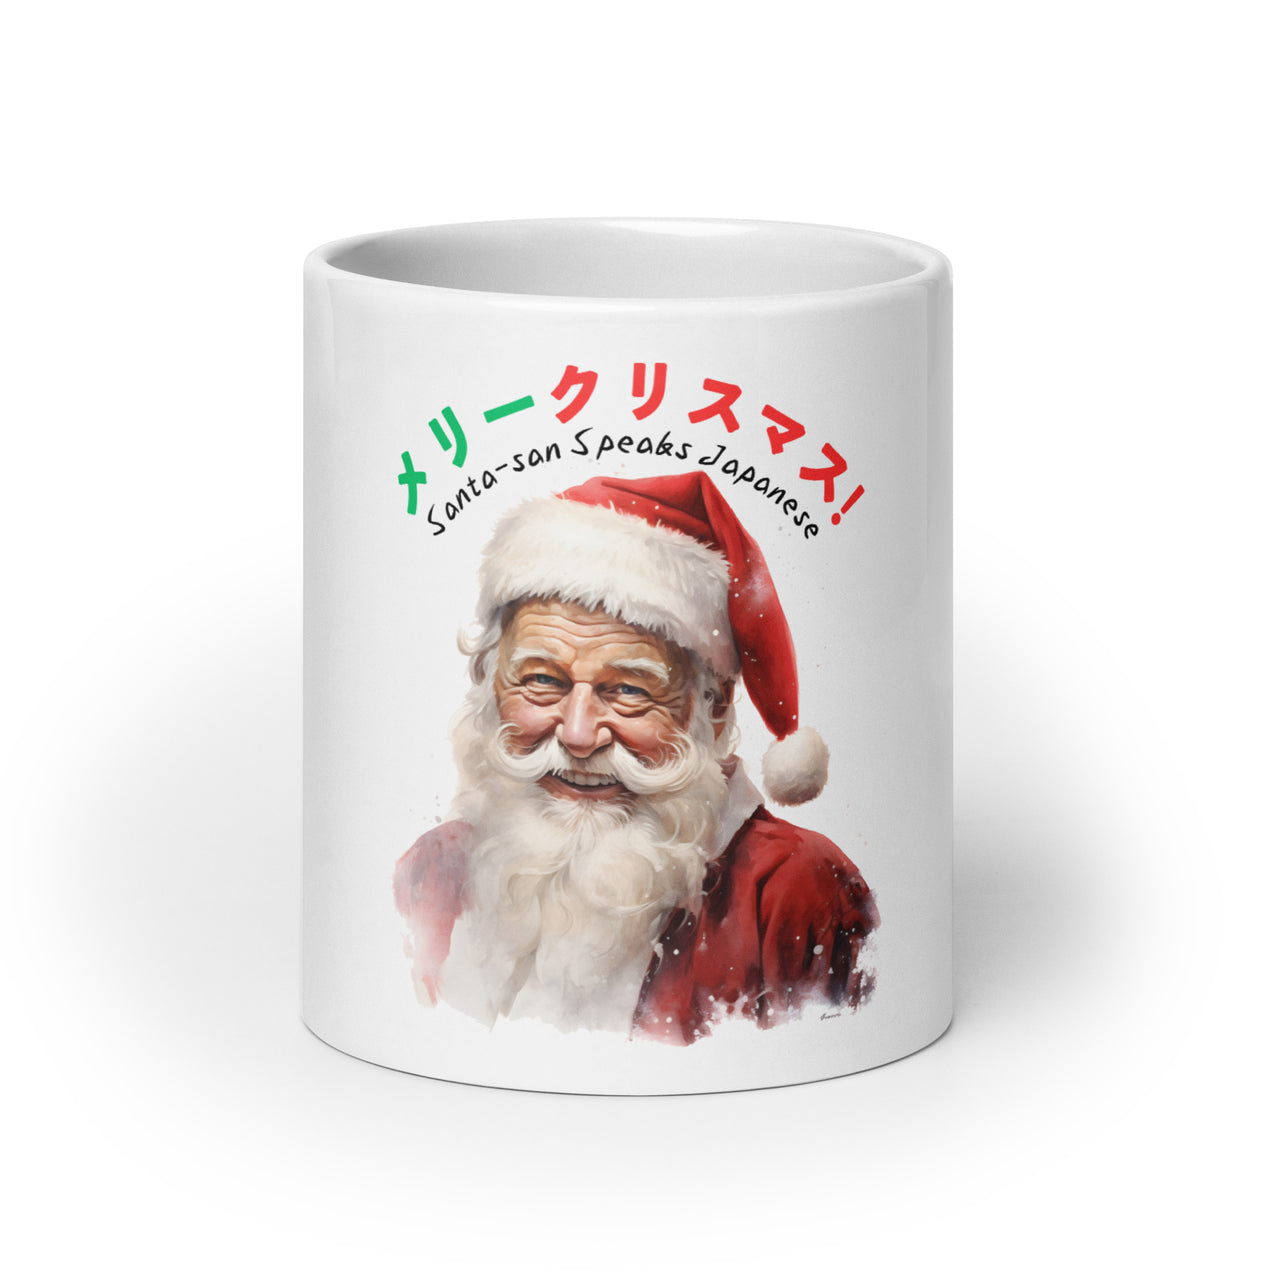 Santa-san Speaks Japanese White Mug